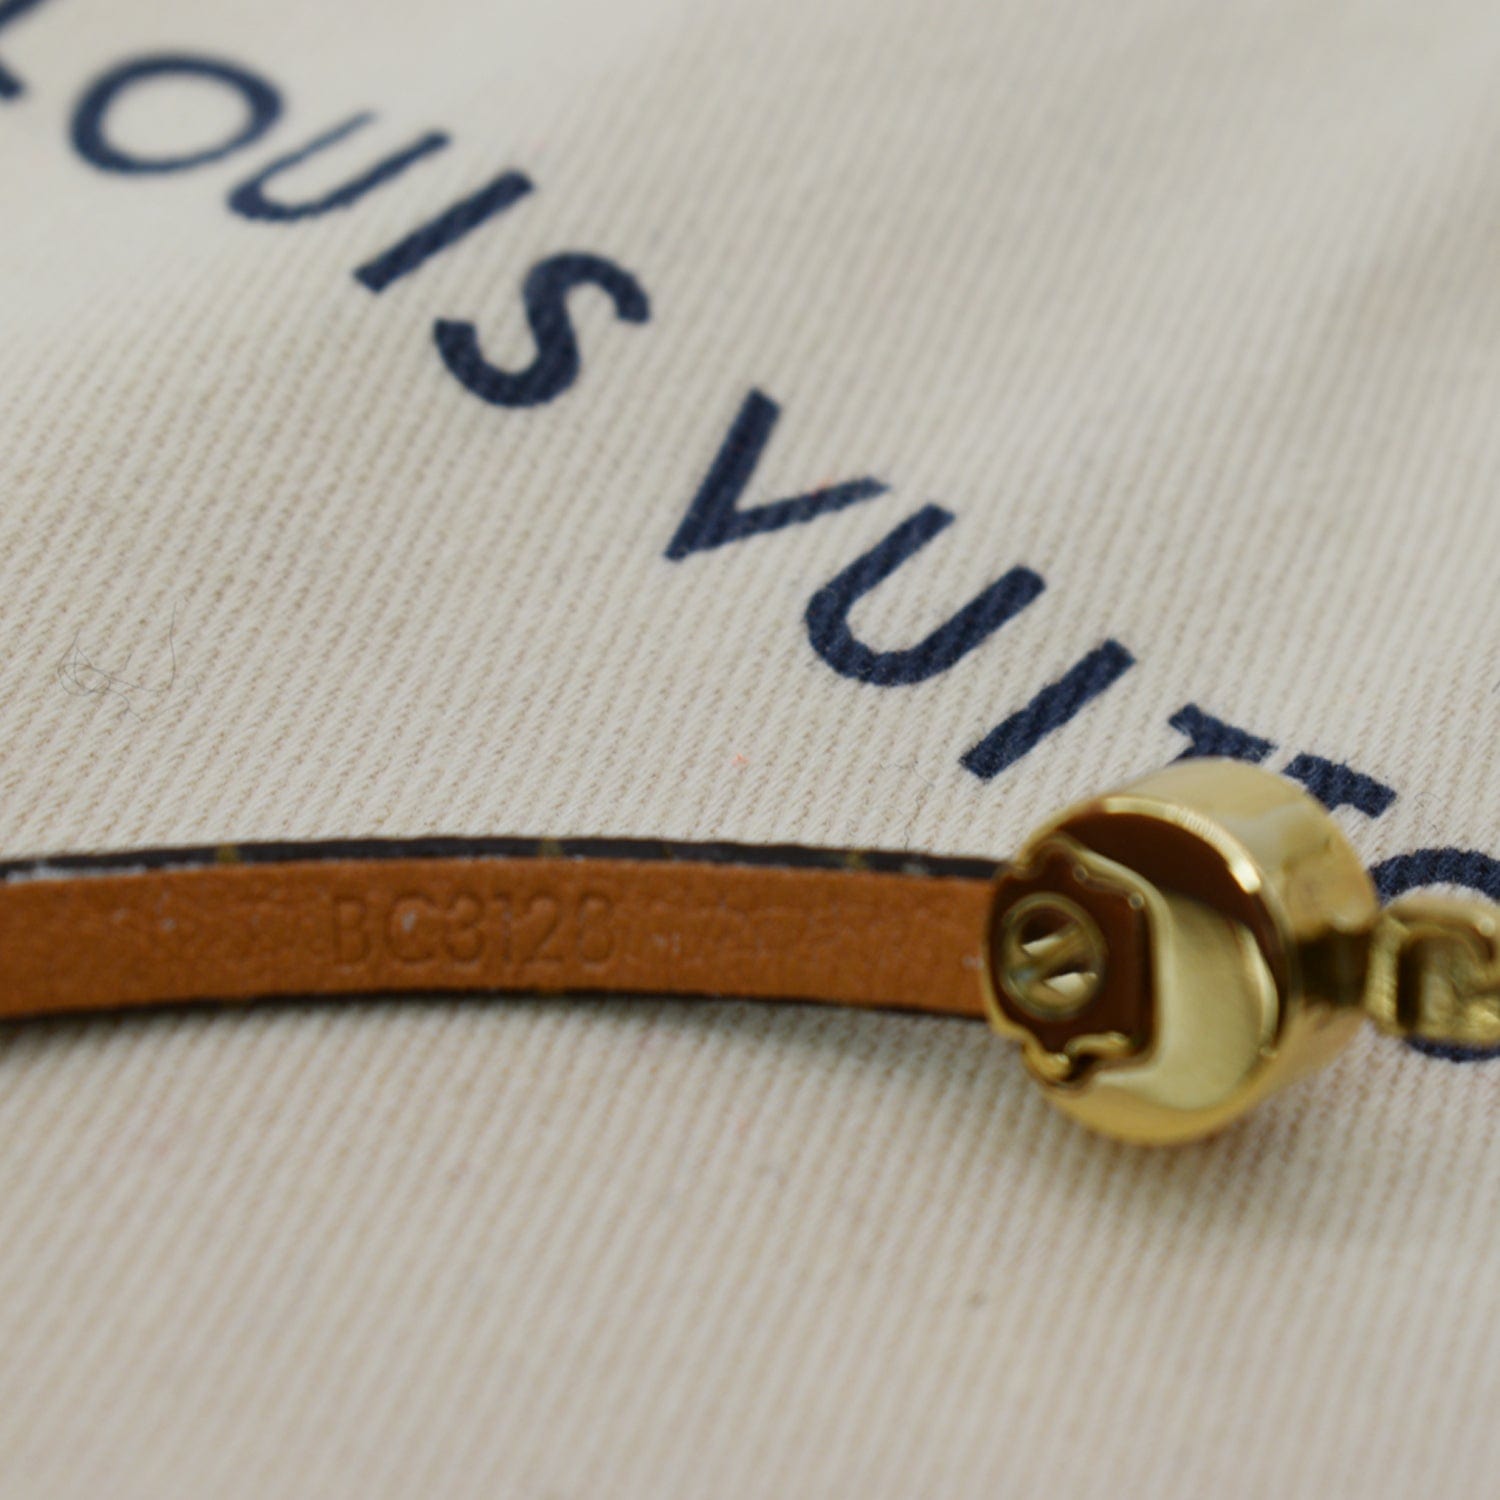 Louis Vuitton Monogram Canvas Historic Bracelet 17 Louis Vuitton